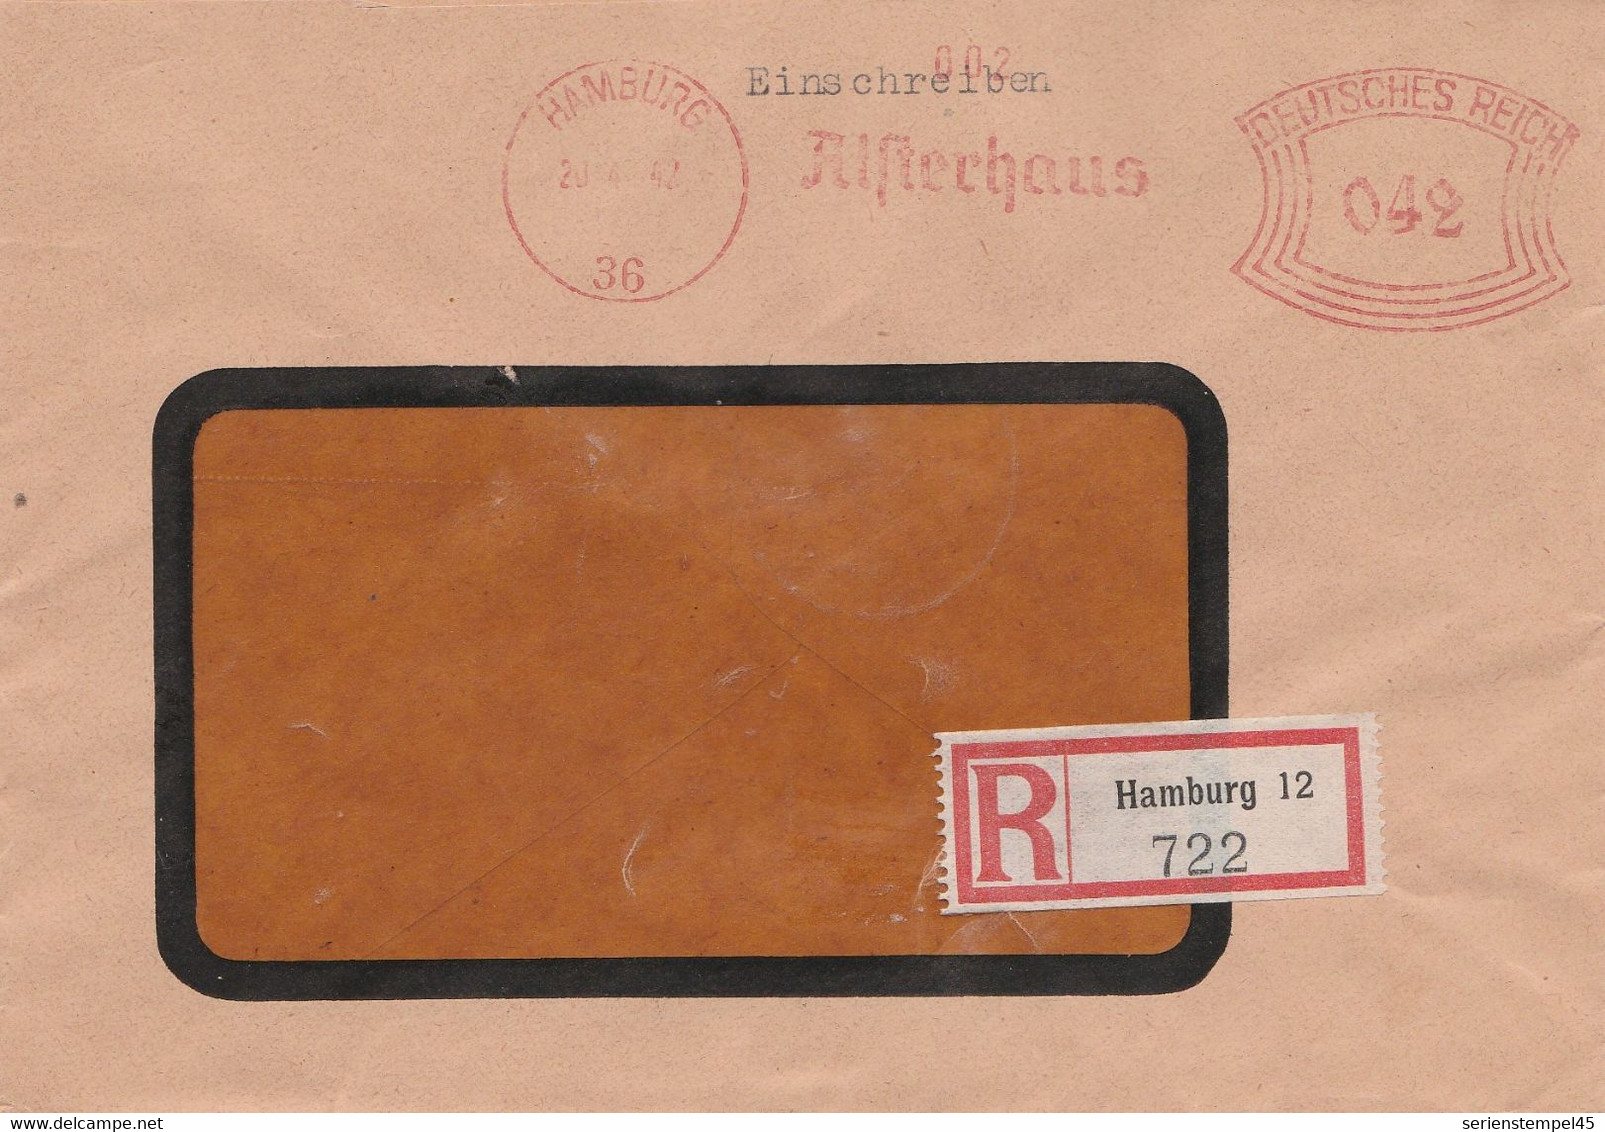 Deutsches Reich Einschreibe Brief Mit Freistempel Hamburg 36 1942 Alsterhaus - Poststempel - Freistempel